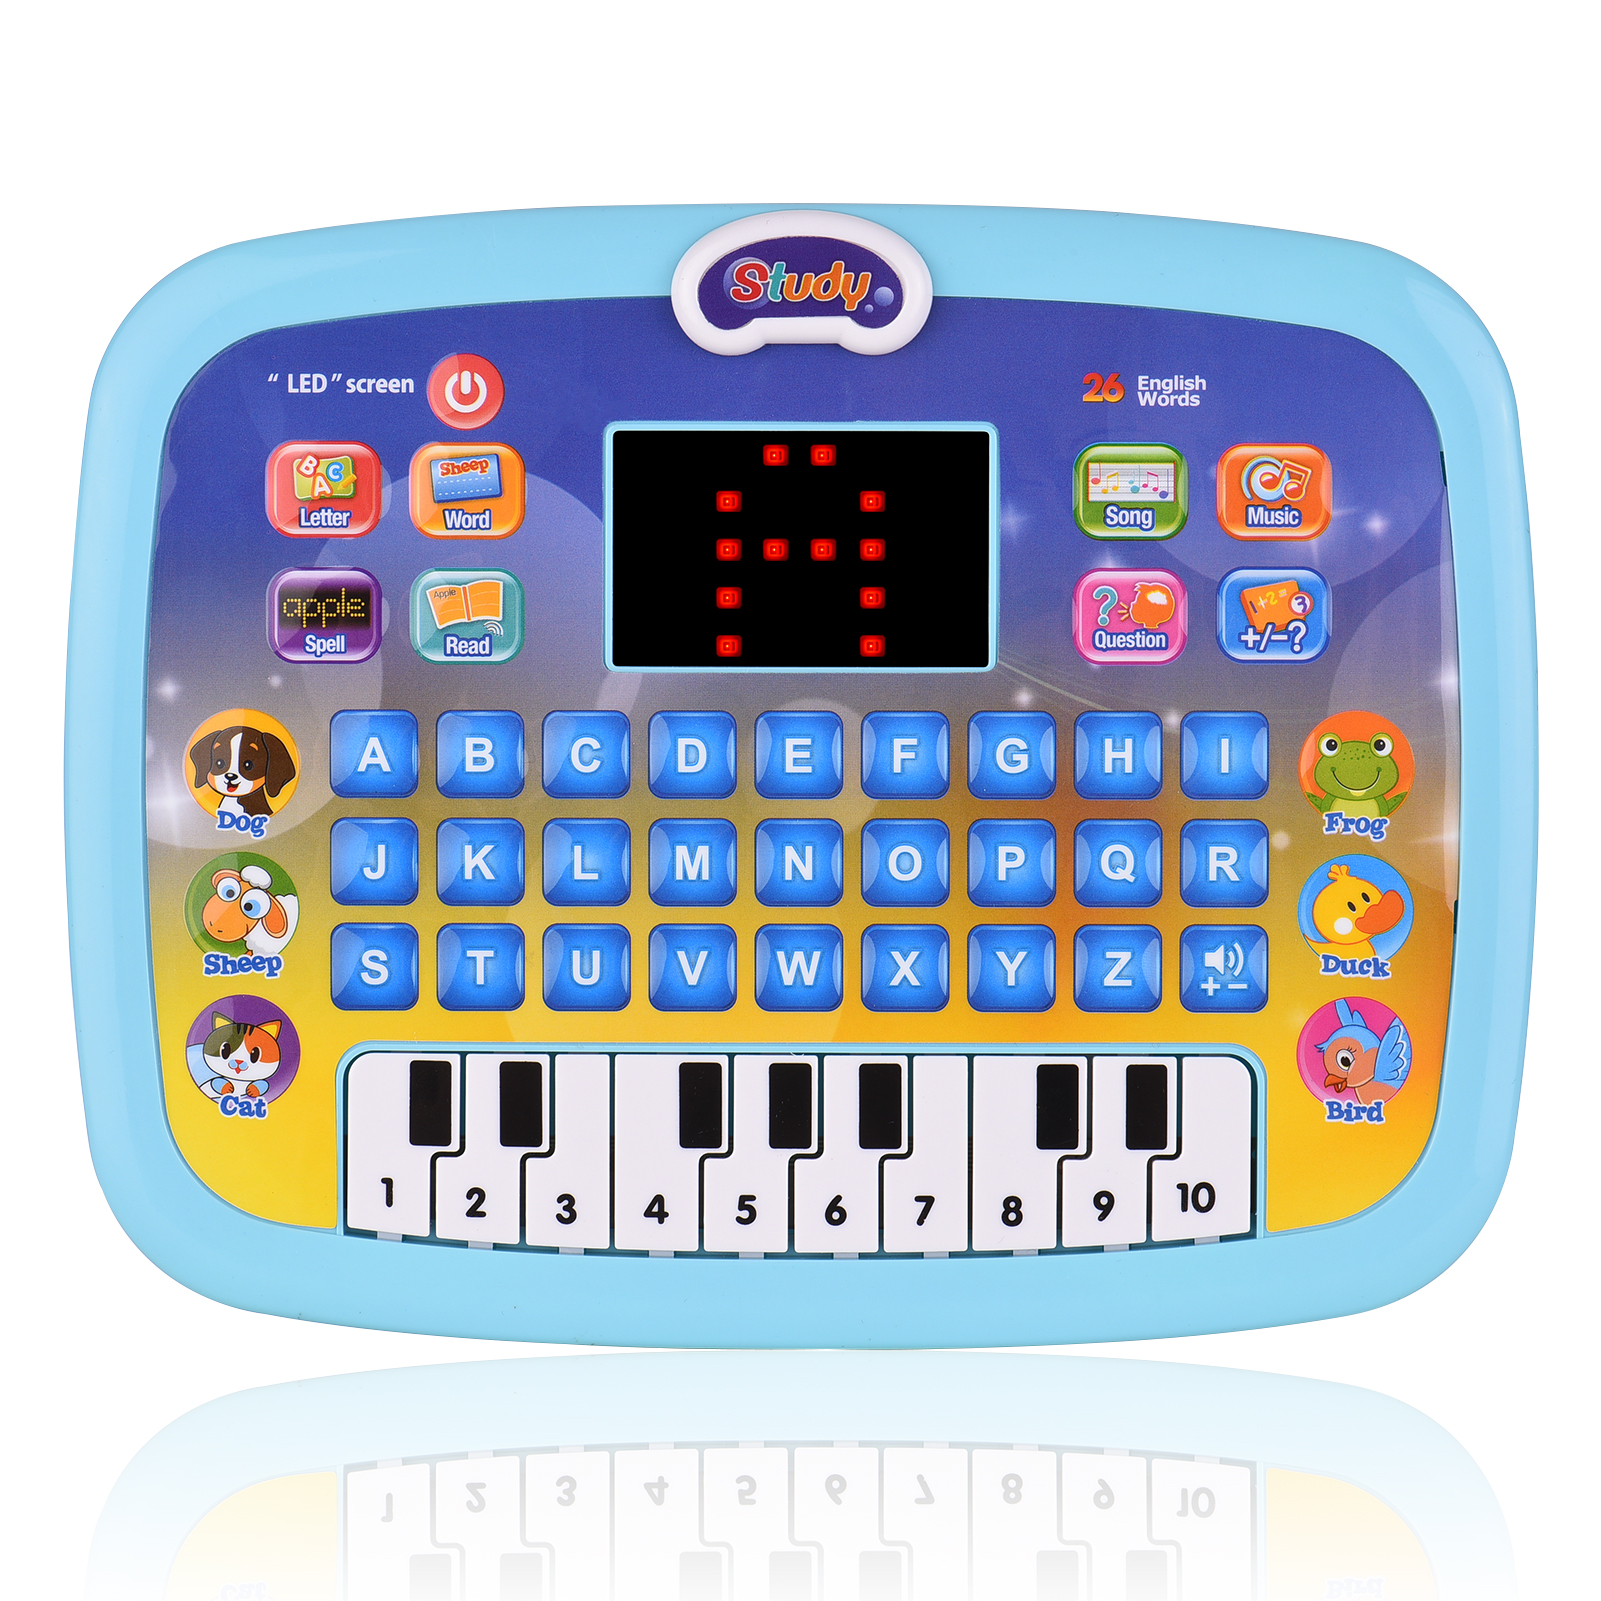 새로운 학습 태블릿 유아 컴퓨터 장난감 LED 스크린 디스플레이 8 학습 모드 조기 교육 장난감 선물 연령 3-6 년